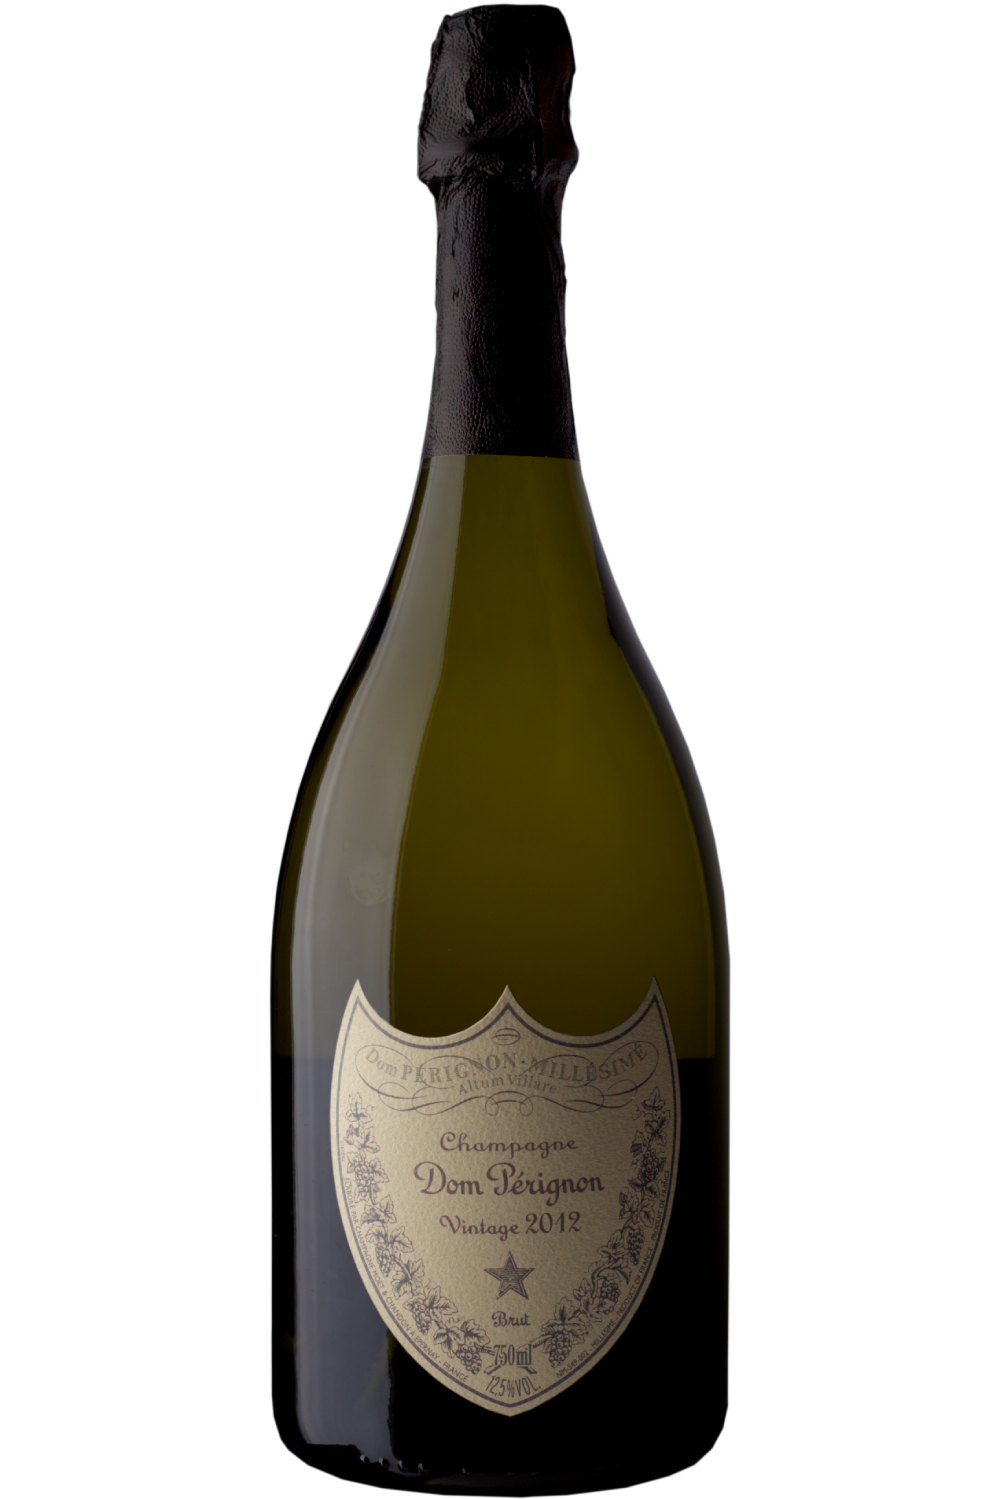 WineVins Dom Pérignon Champagne 2012